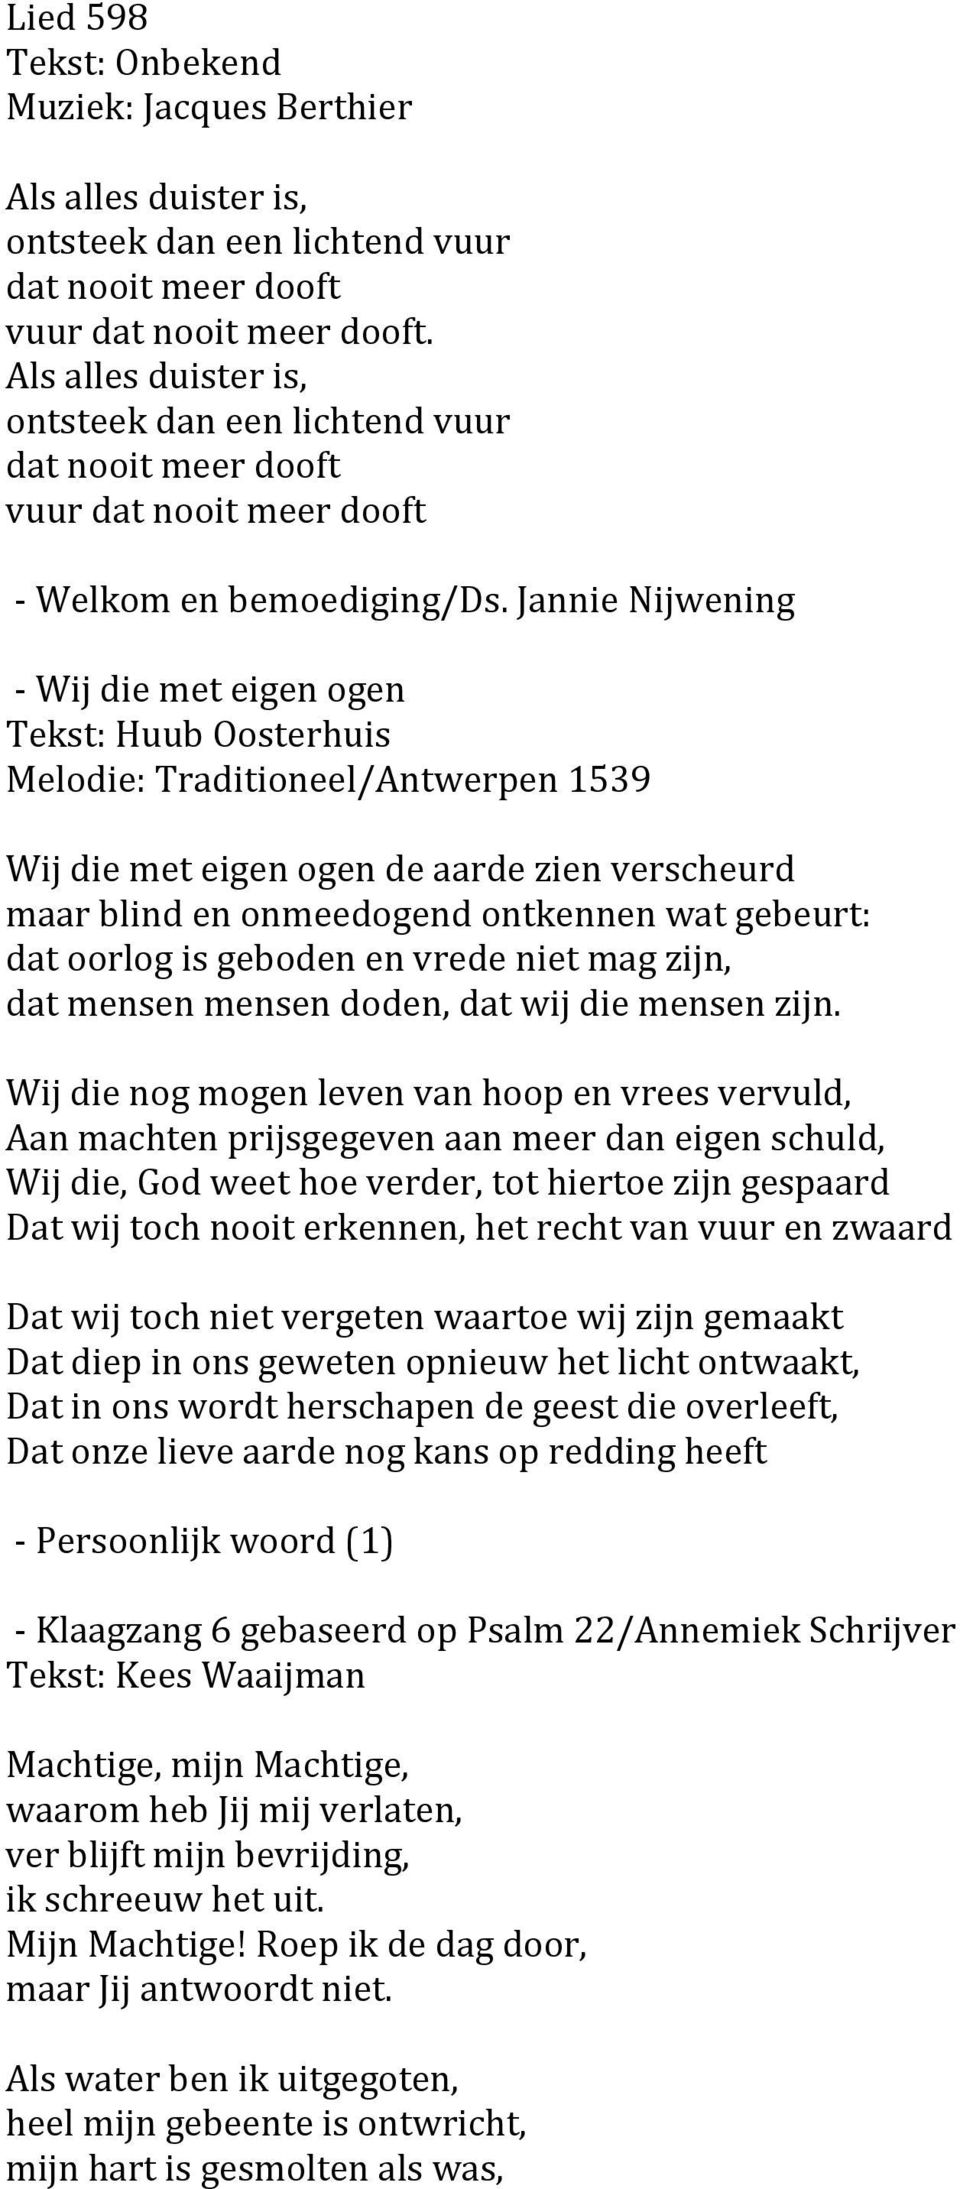 Jannie Nijwening - Wij die met eigen ogen Tekst: Huub Oosterhuis Melodie: Traditioneel/Antwerpen 1539 Wij die met eigen ogen de aarde zien verscheurd maar blind en onmeedogend ontkennen wat gebeurt: